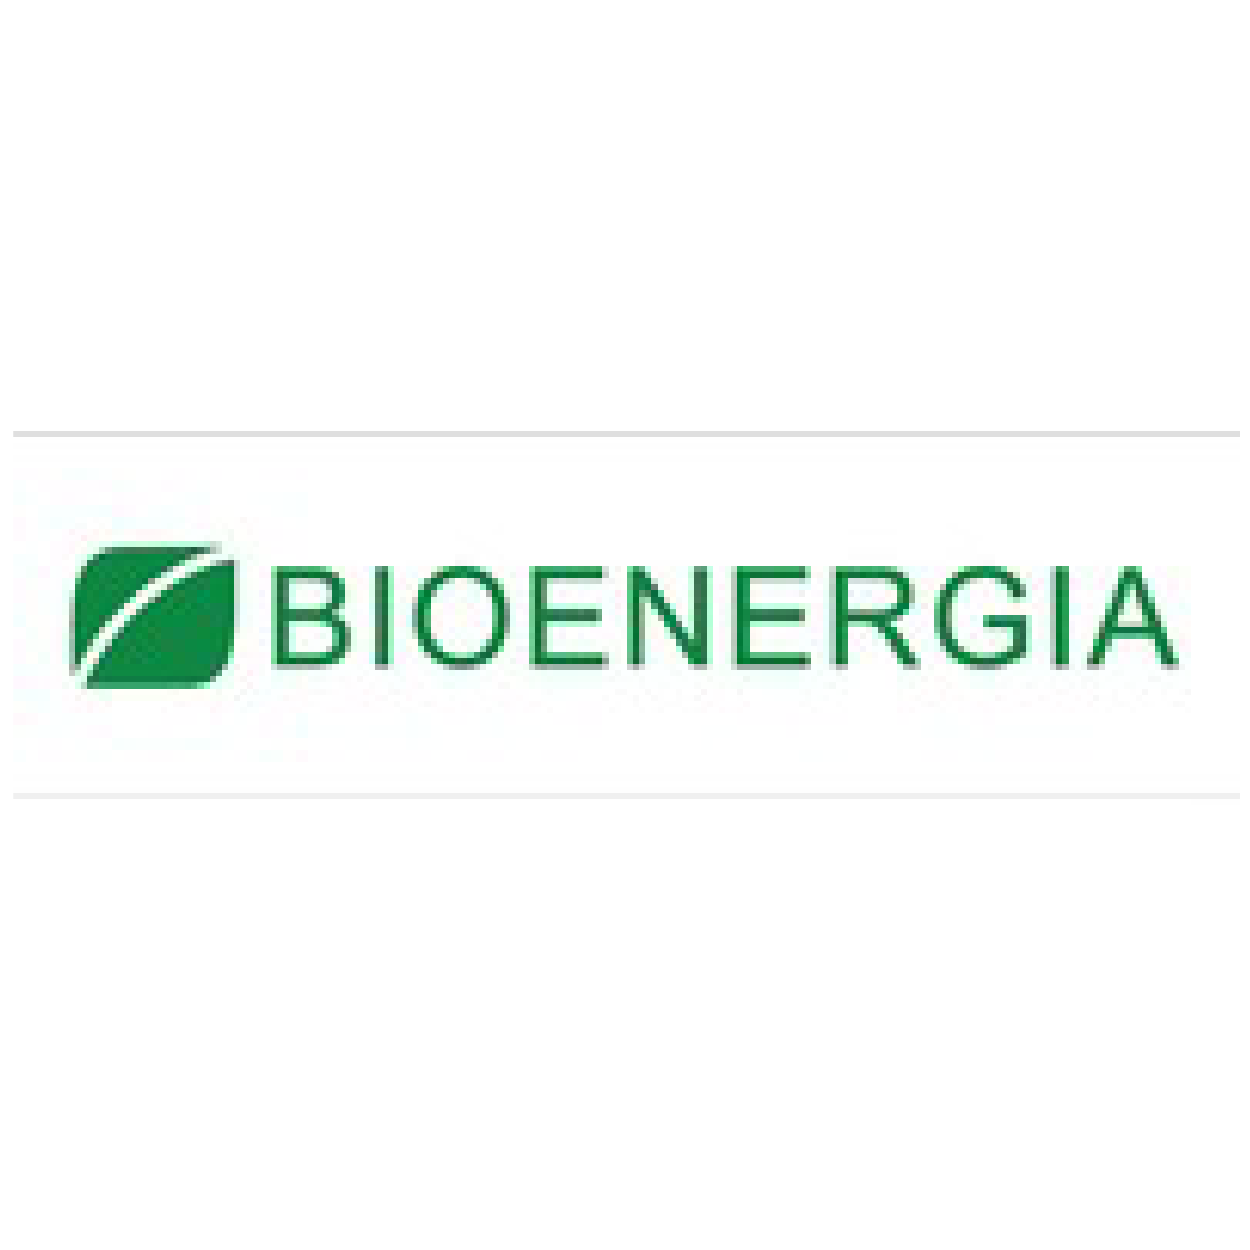 Finnish Bioenergy Association (Bioenergia ry)